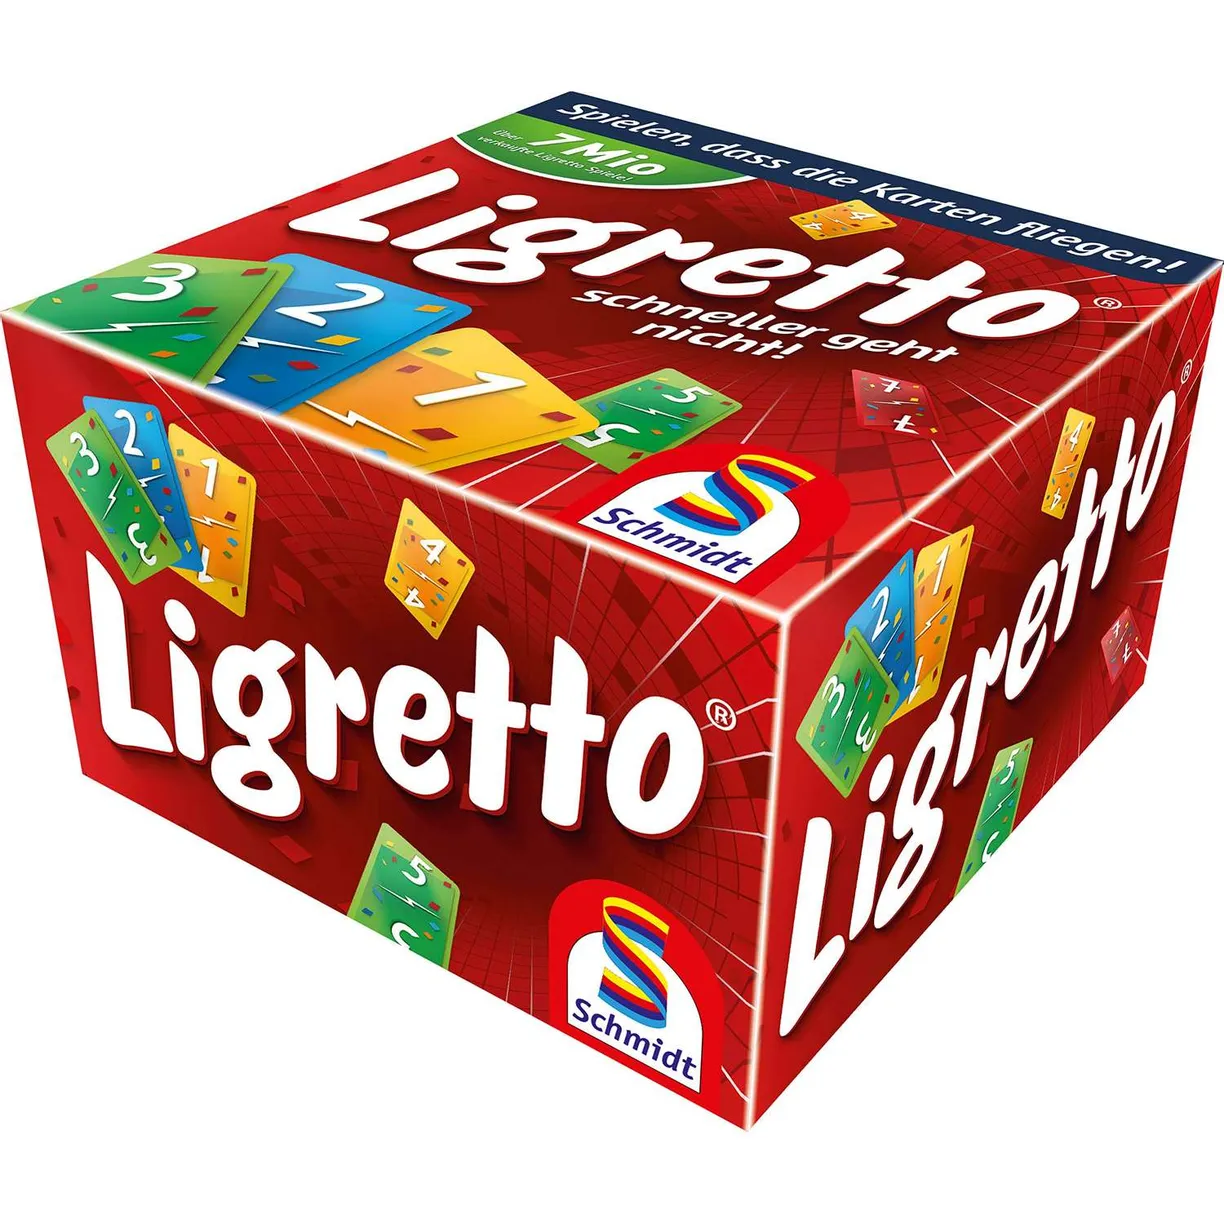 Настольная игра Ligretto - фото